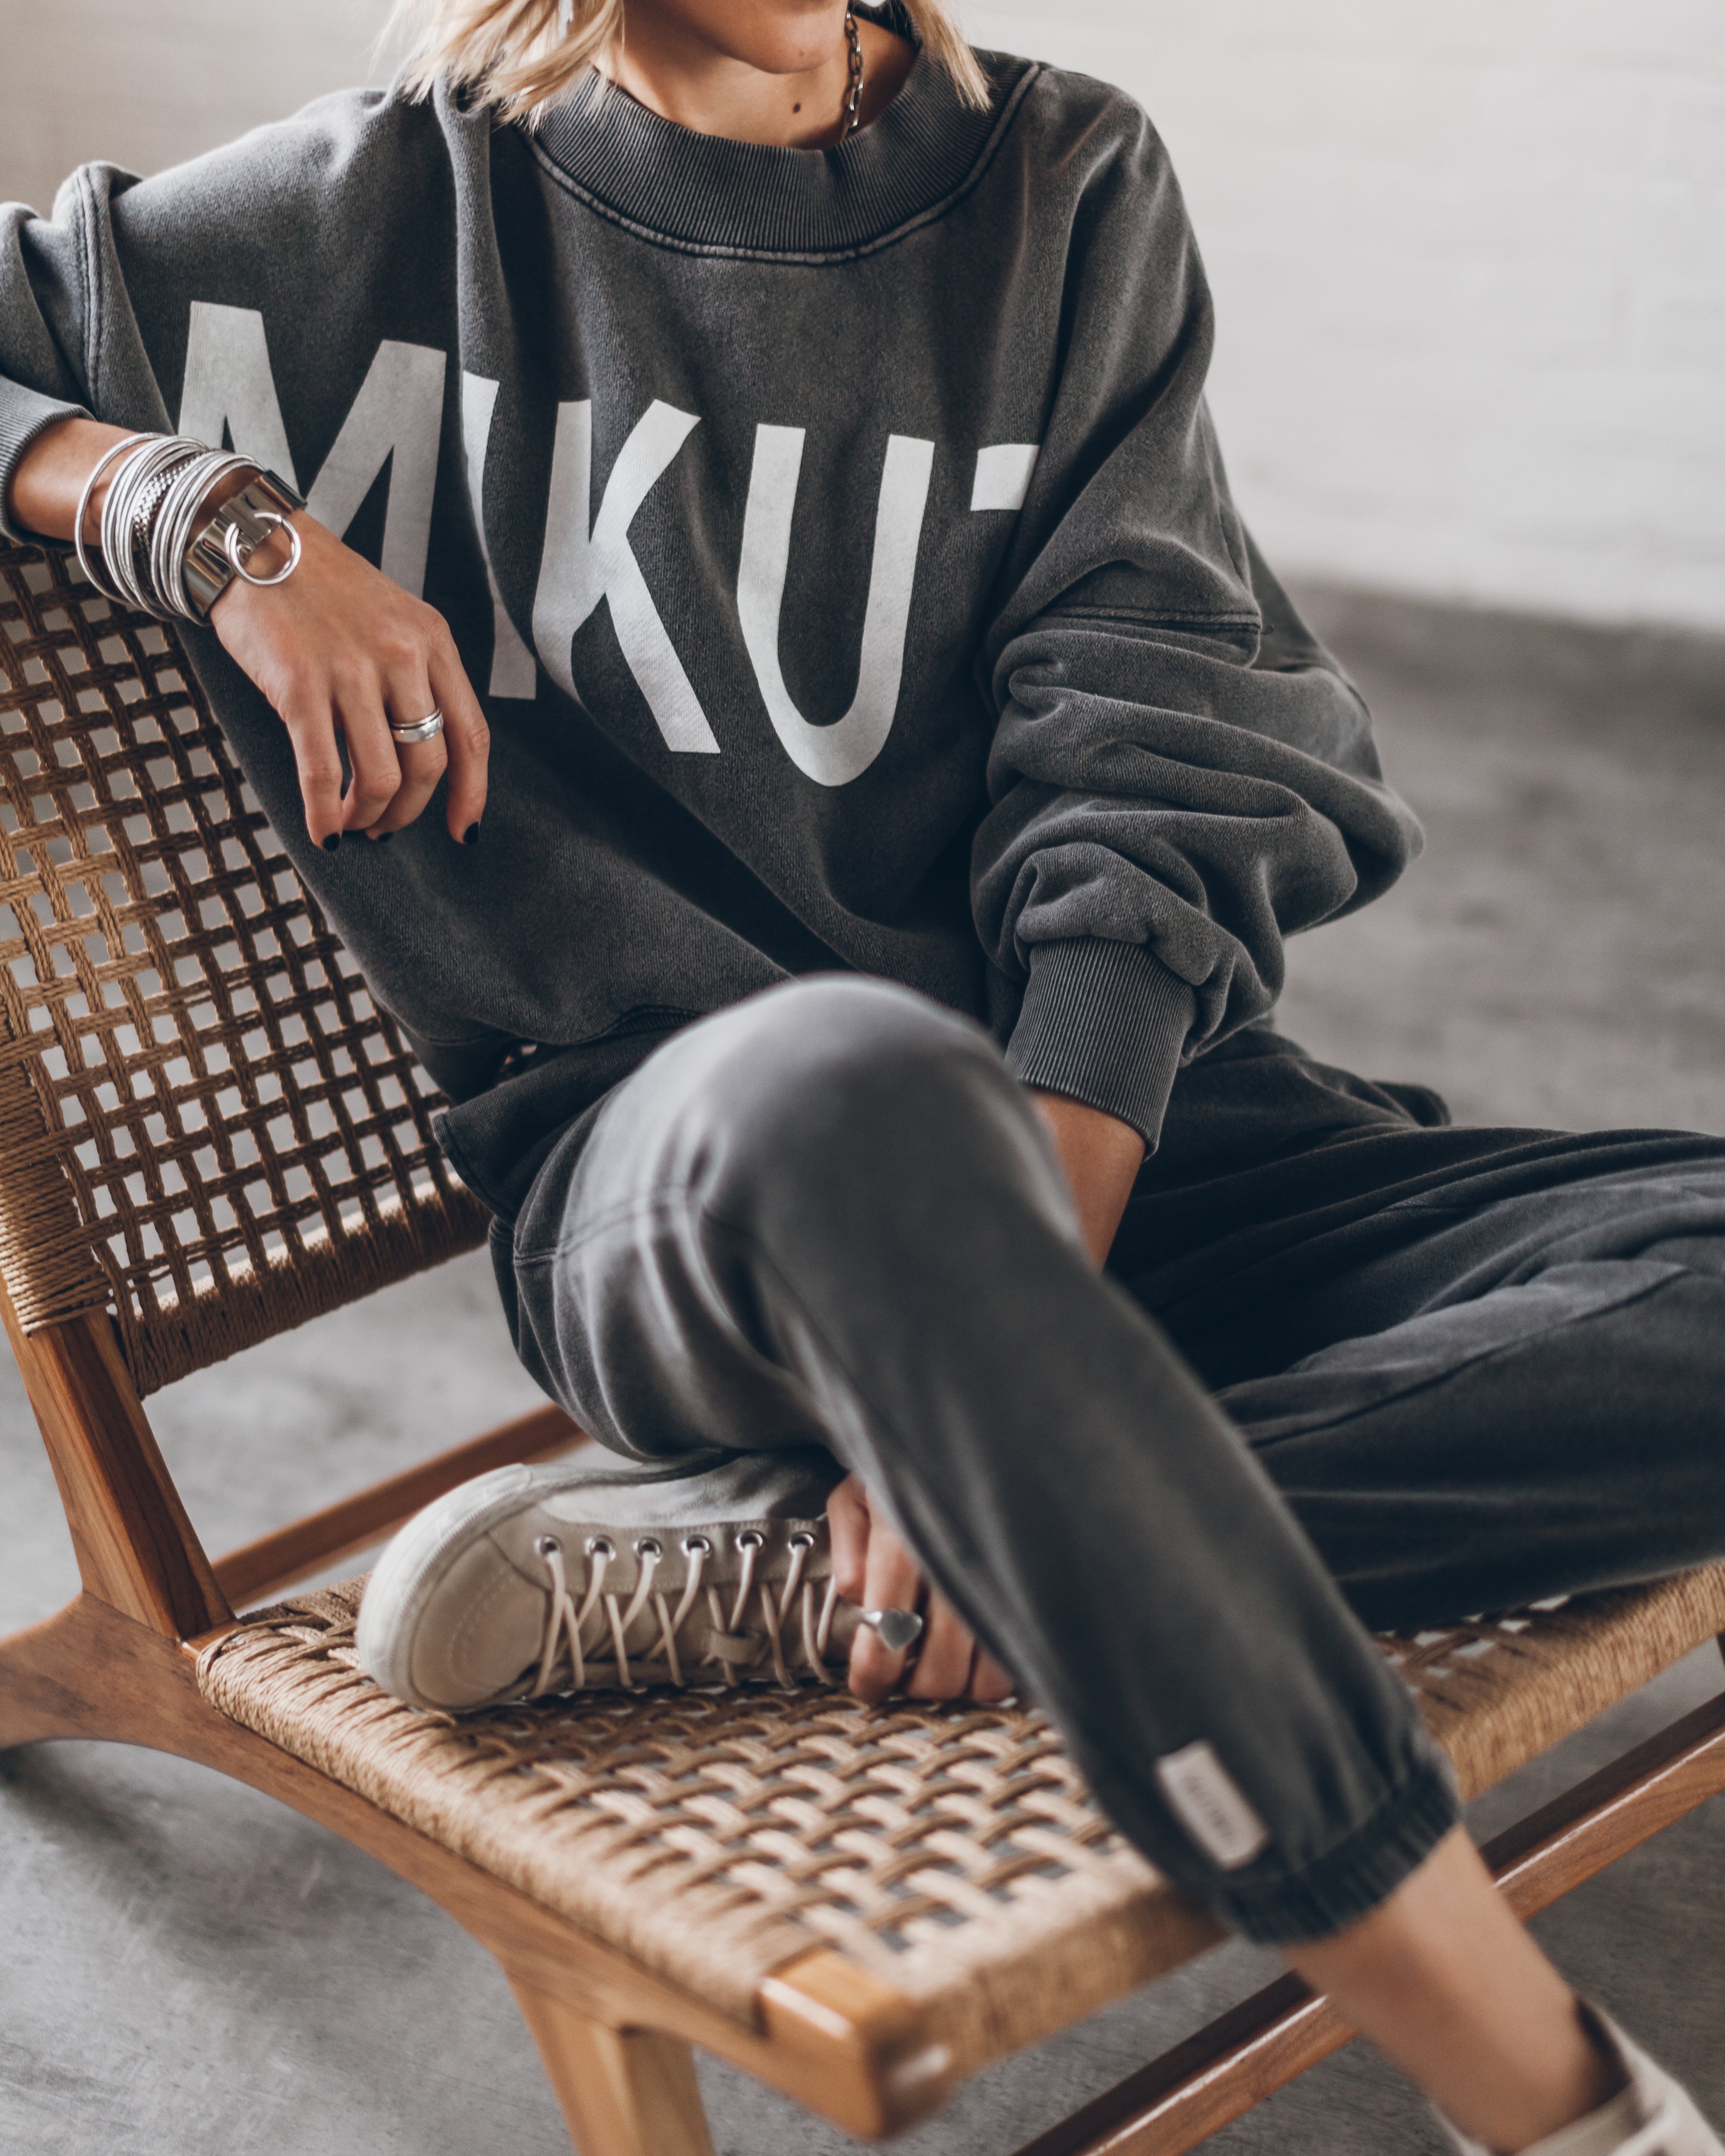 The Black Faded Mikuta Sweater